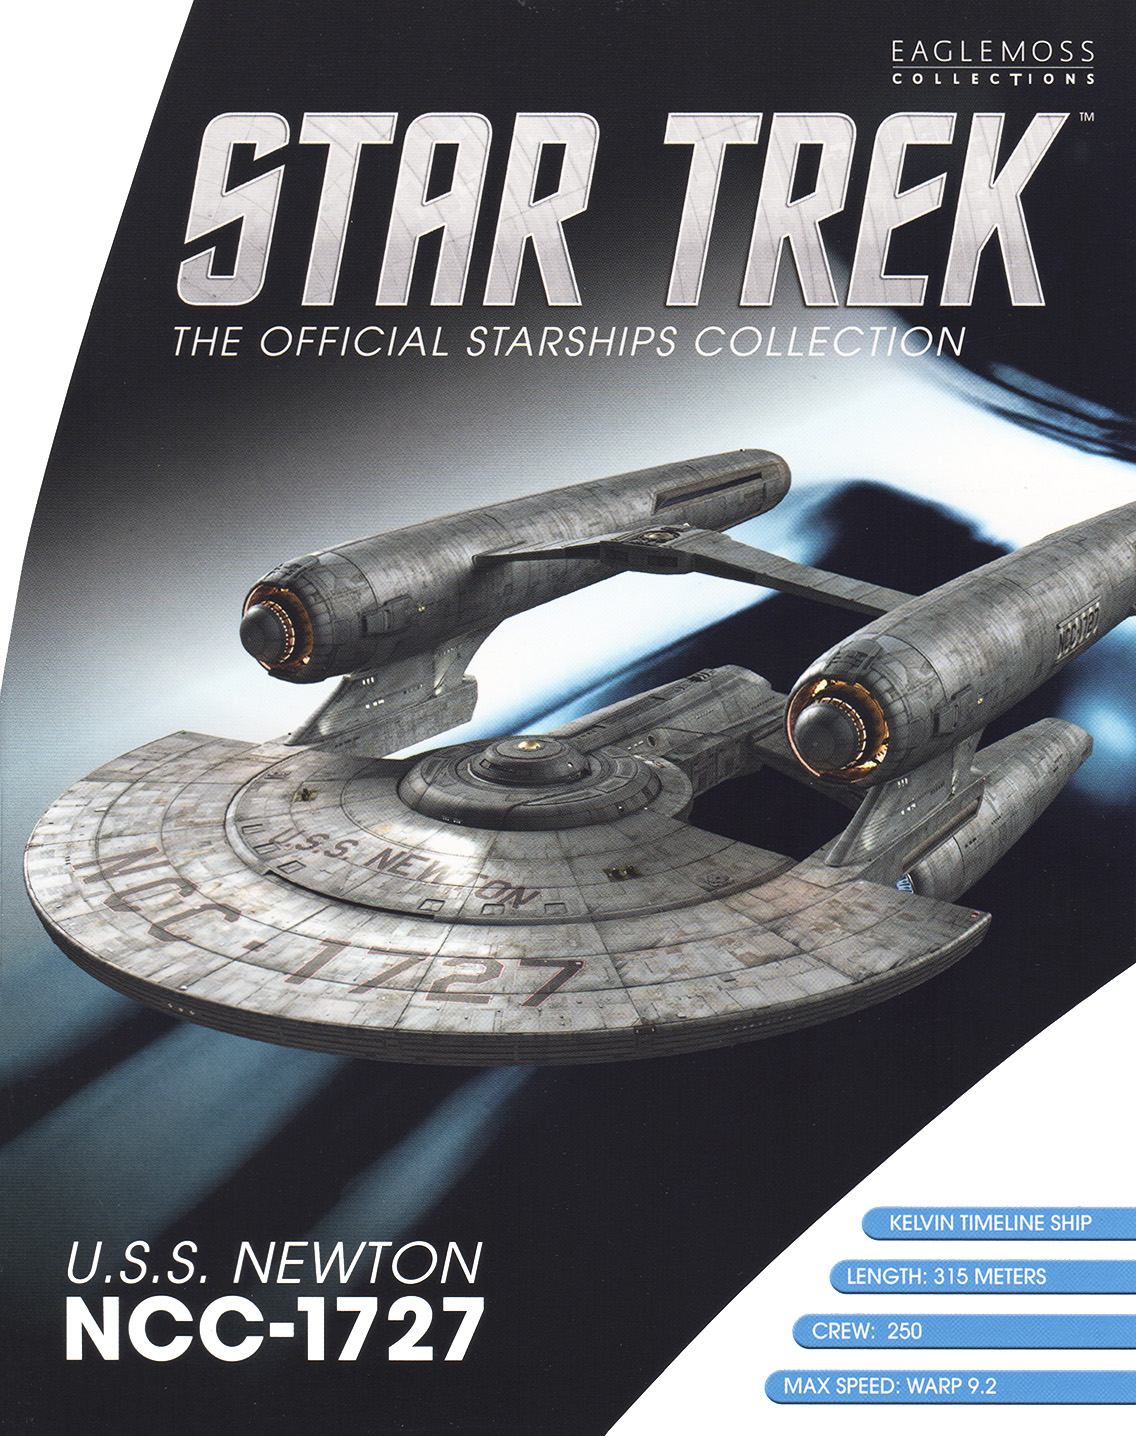 Eaglemoss Star Trek Starships Bonus Issue 28